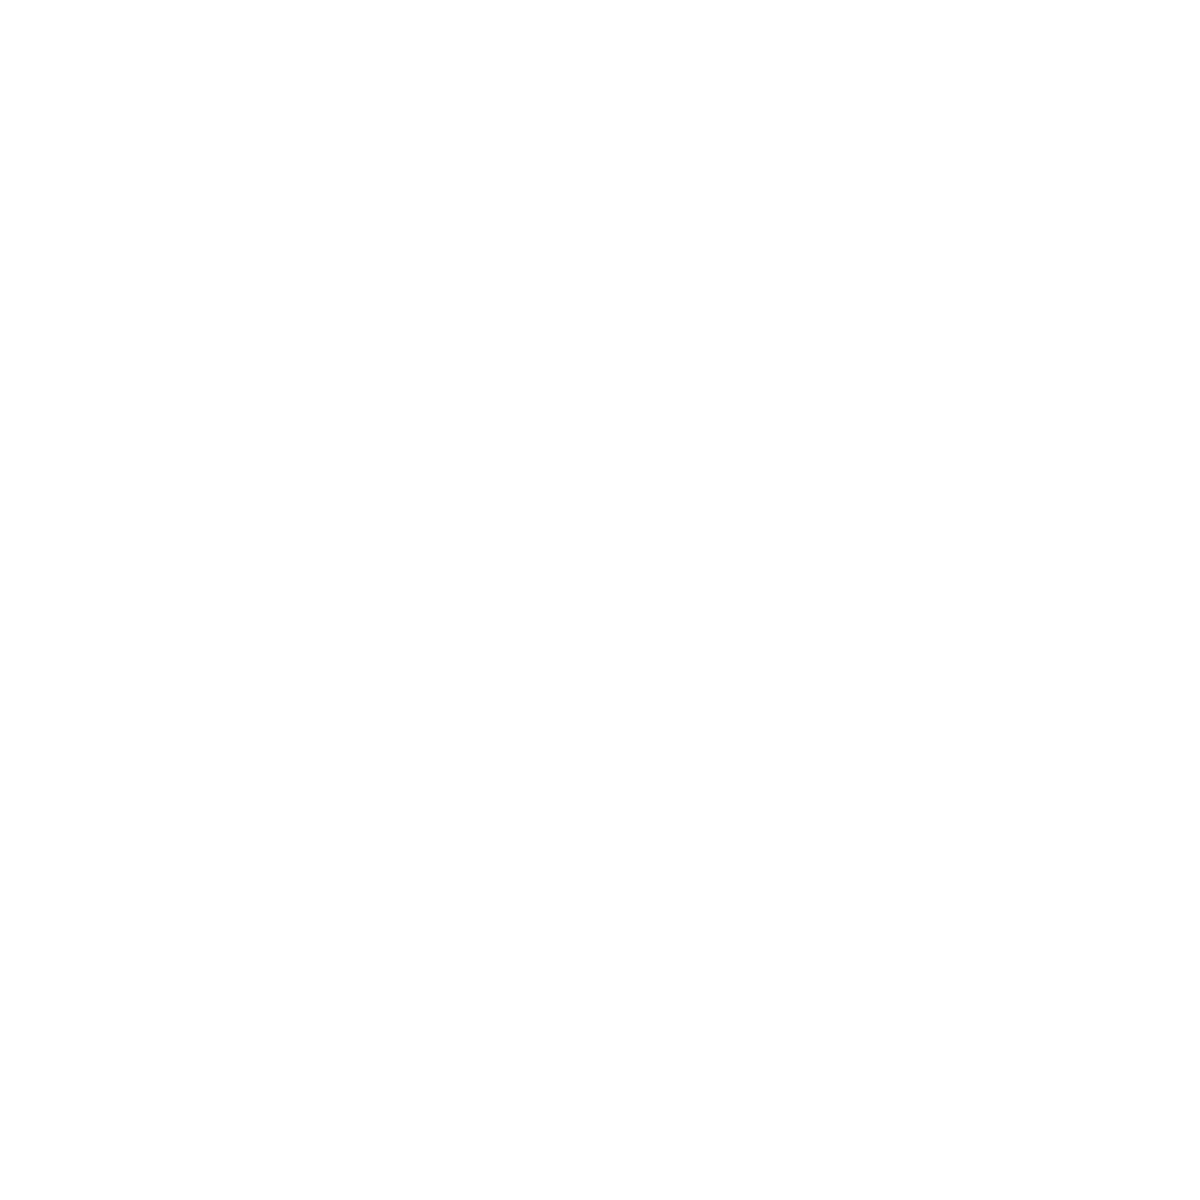 Morgen Fund Sponsor WealthTech Connect